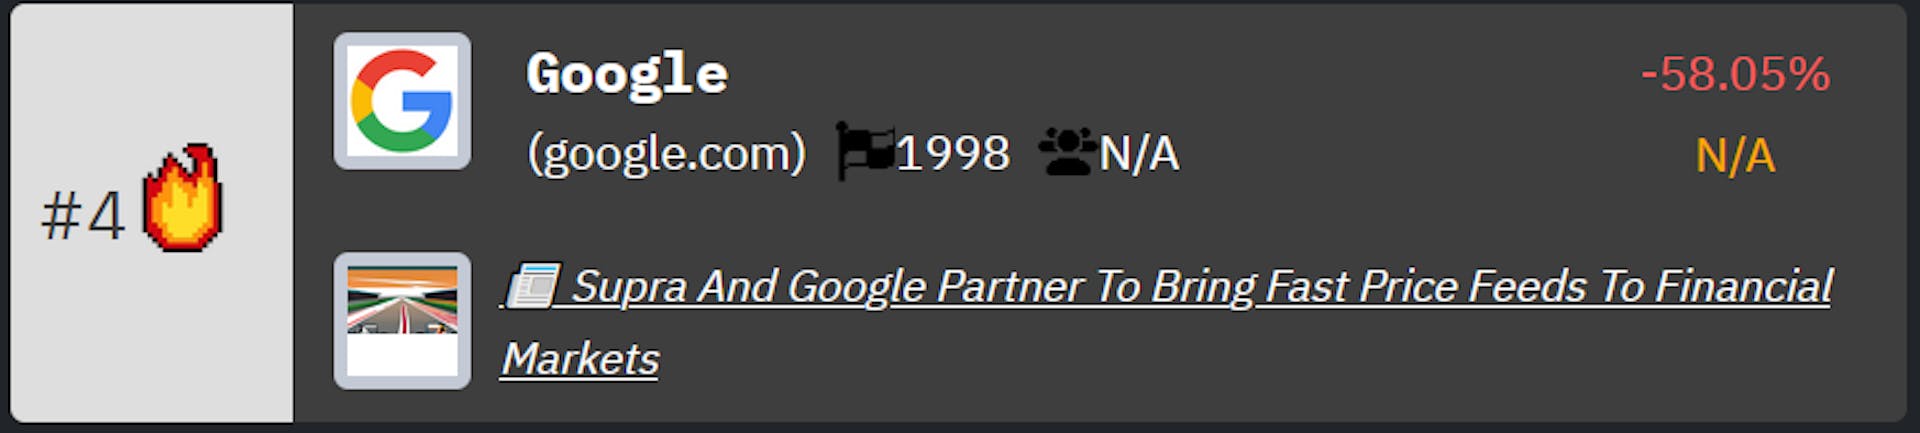 Classificação do Google no ranking de empresas de tecnologia da HackerNoon